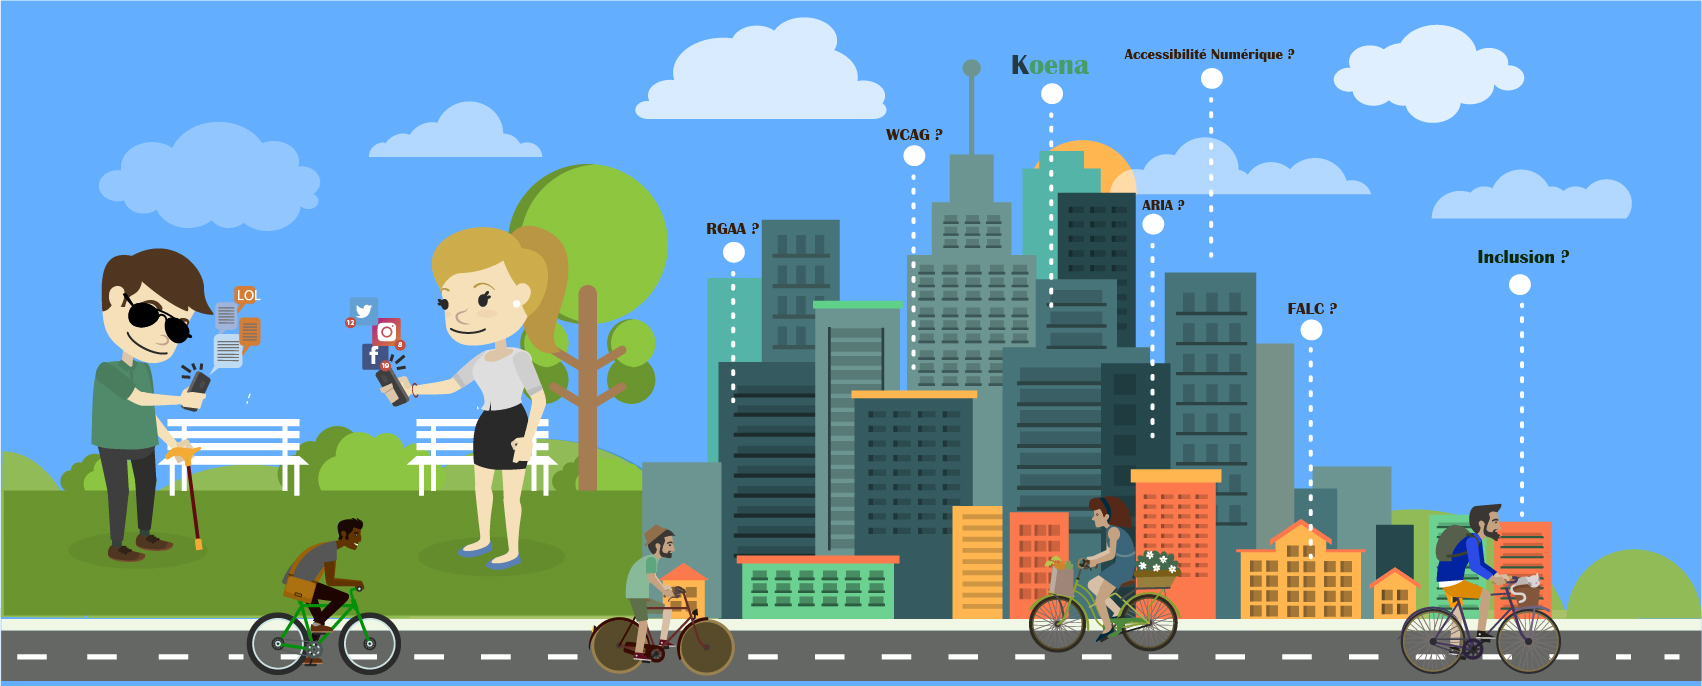 Illustration d'une ville connectée à l'accessibilité numérique.